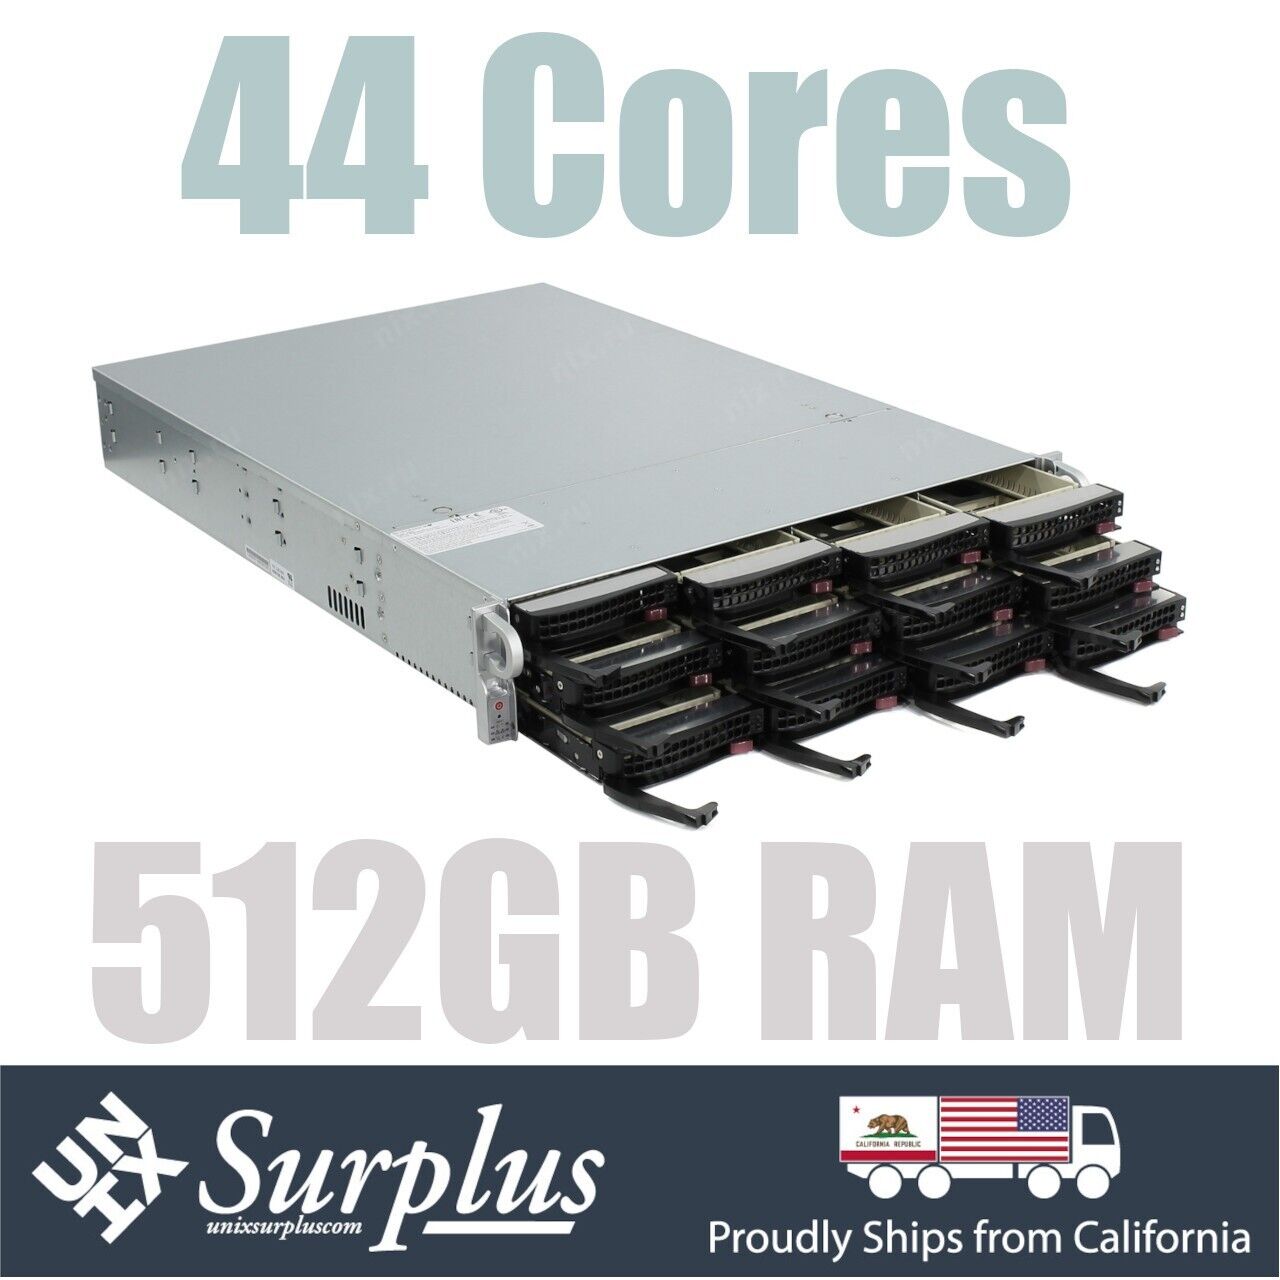 2U ZFS TRUNAS Server 2x Xeon E5-2699 V4 22 Cores 512GB RAM 12 Bay SAS3 HBA 4x10G